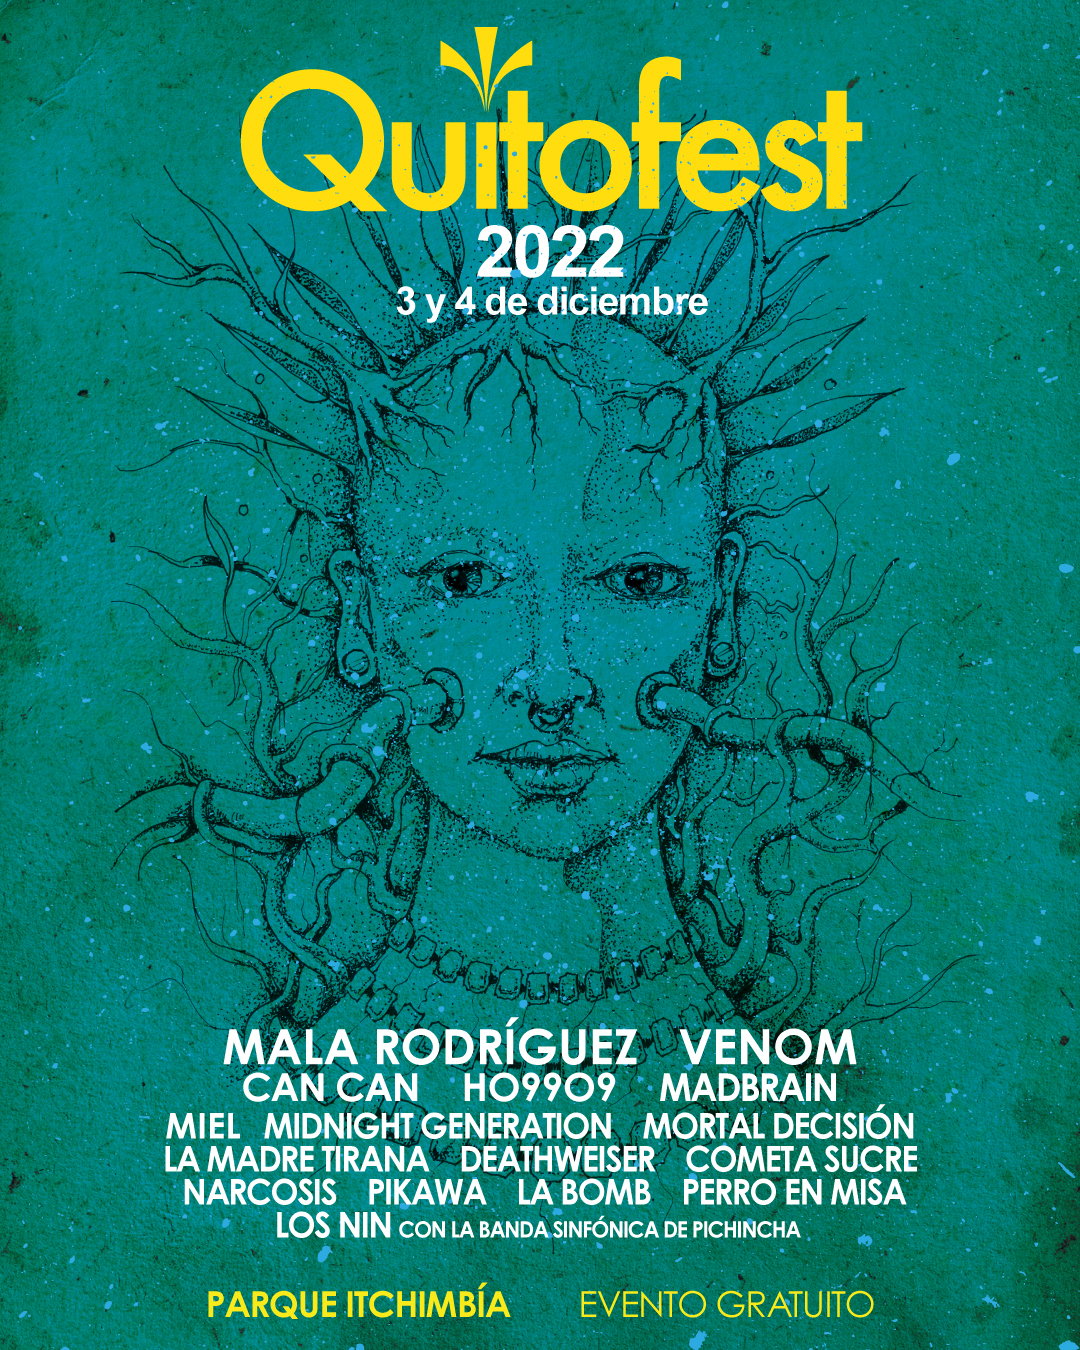 Quitofest 2022